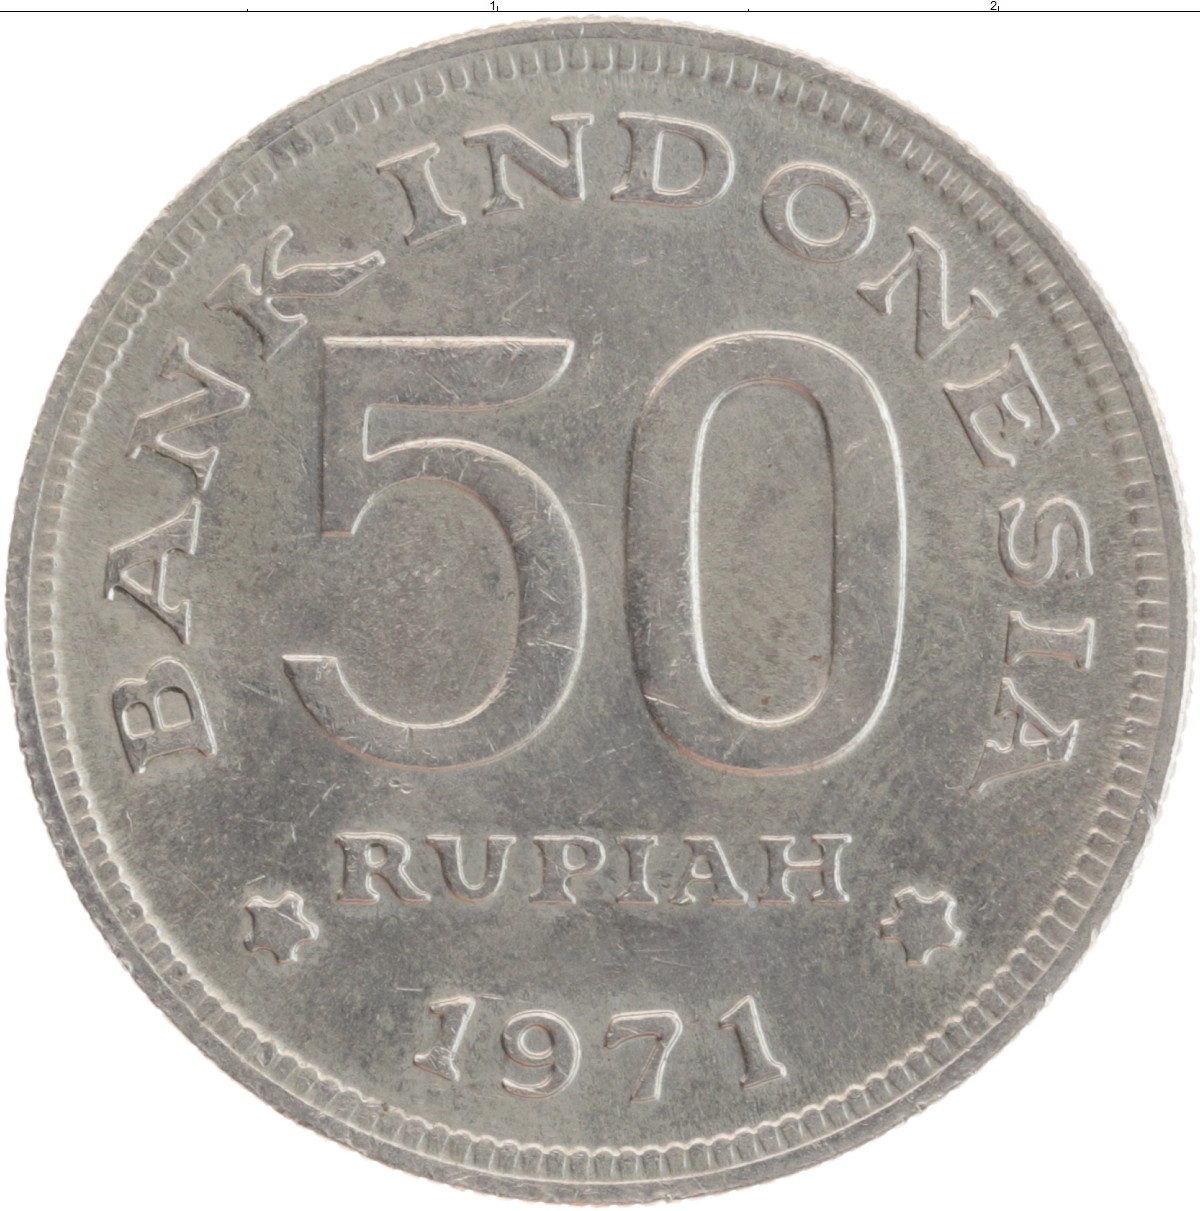 Балийский рупий к рублю. Монеты Индонезии 1971 года. Монголия 1 тугрик 1971 медь-никель.